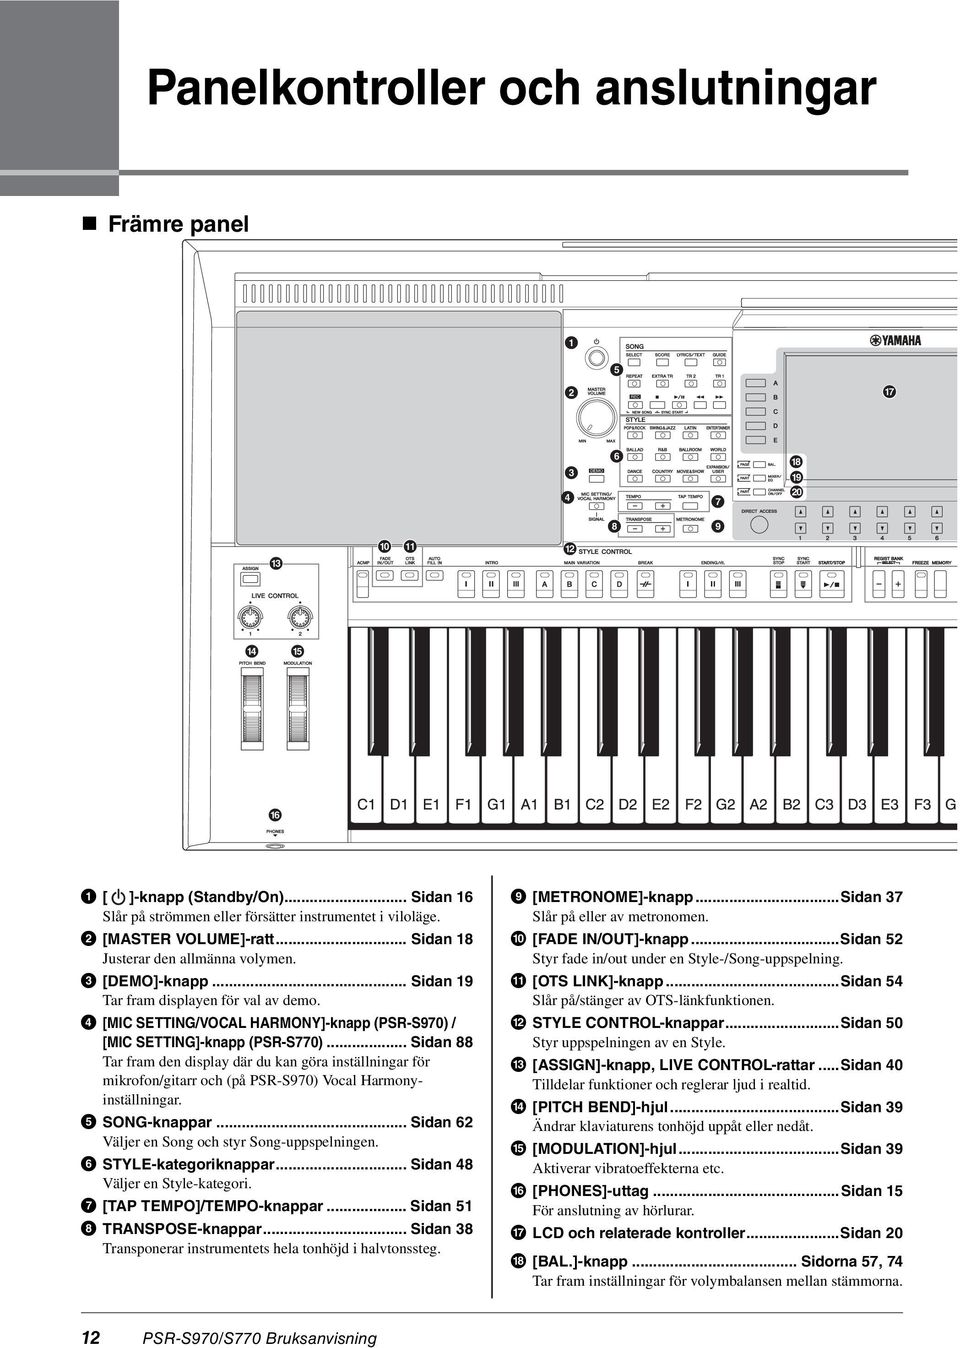 .. Sidan 88 Tar fram den display där du kan göra inställningar för mikrofon/gitarr och (på PSR-S970) Vocal Harmonyinställningar. SONG-knappar... Sidan 62 Väljer en Song och styr Song-uppspelningen.